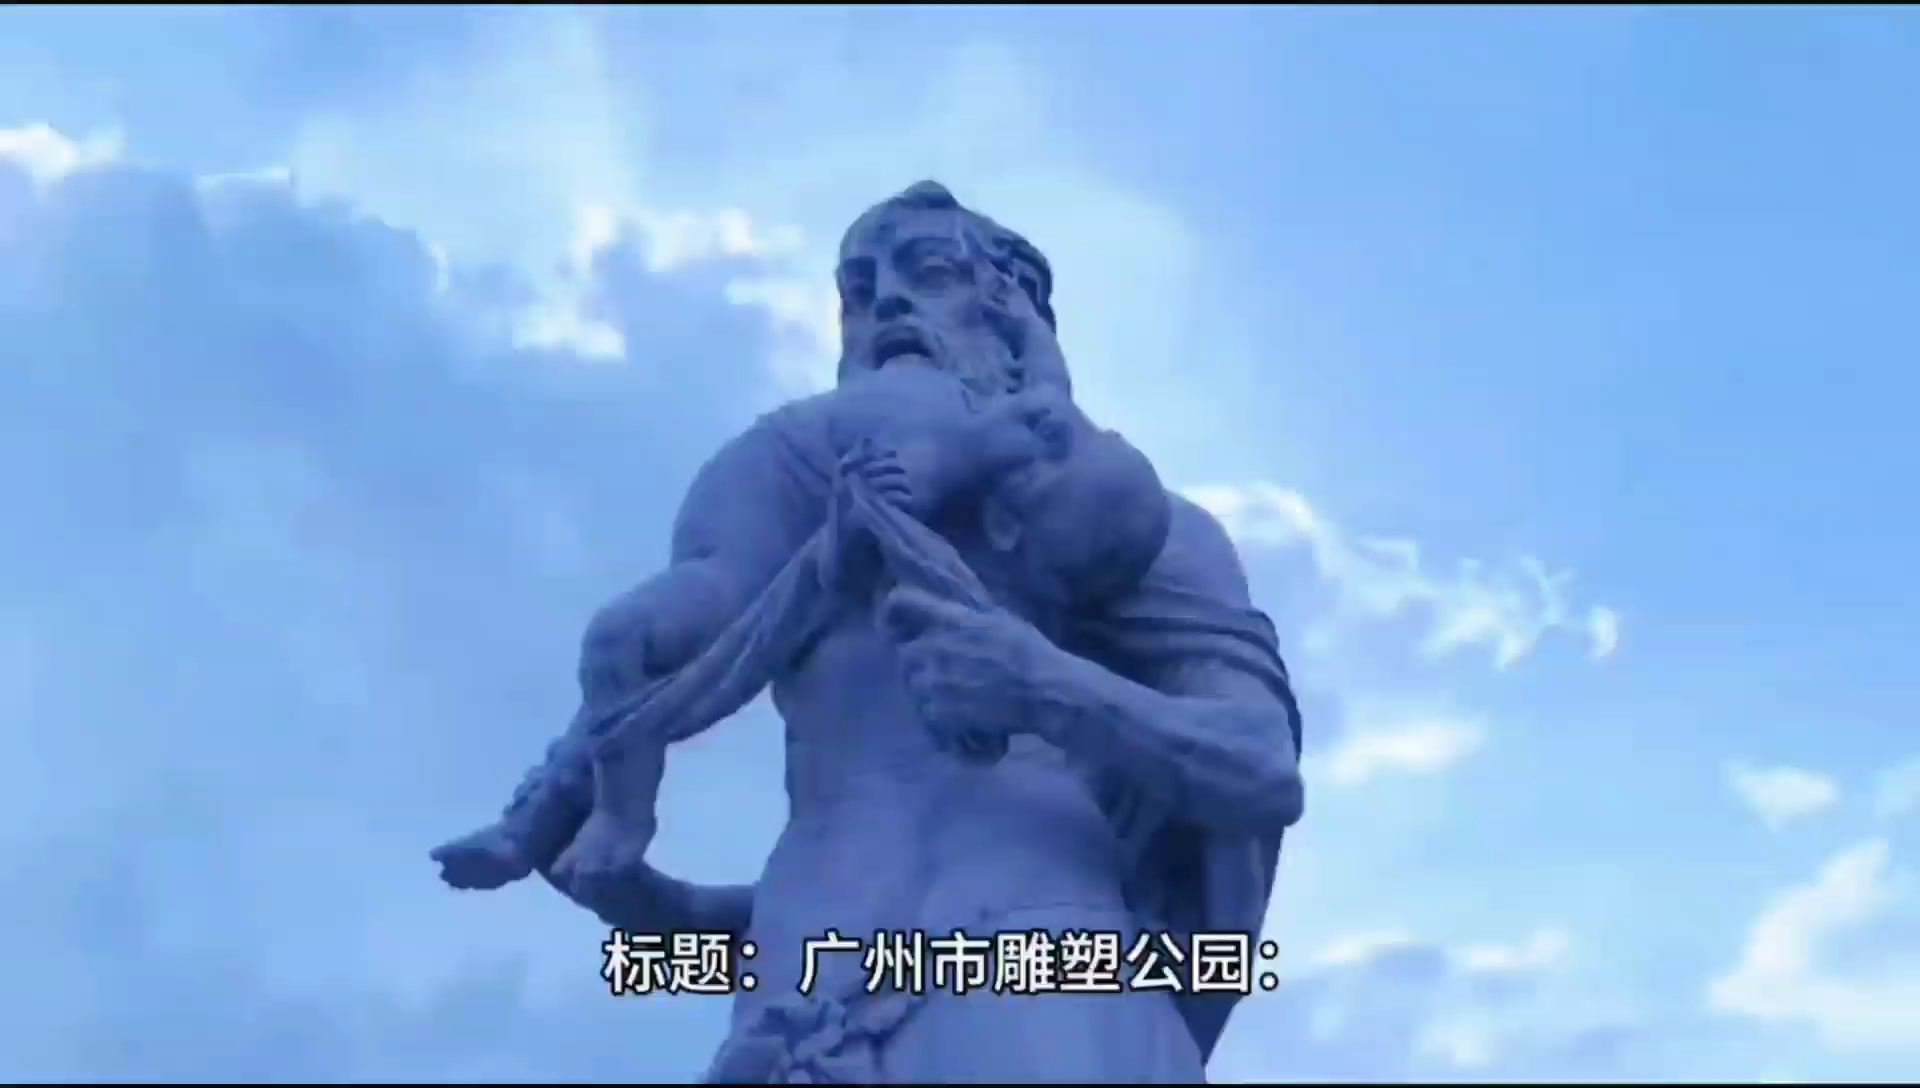 #抖音创作者大会 广州市雕塑公园#看见音乐计划 #日常vlog #